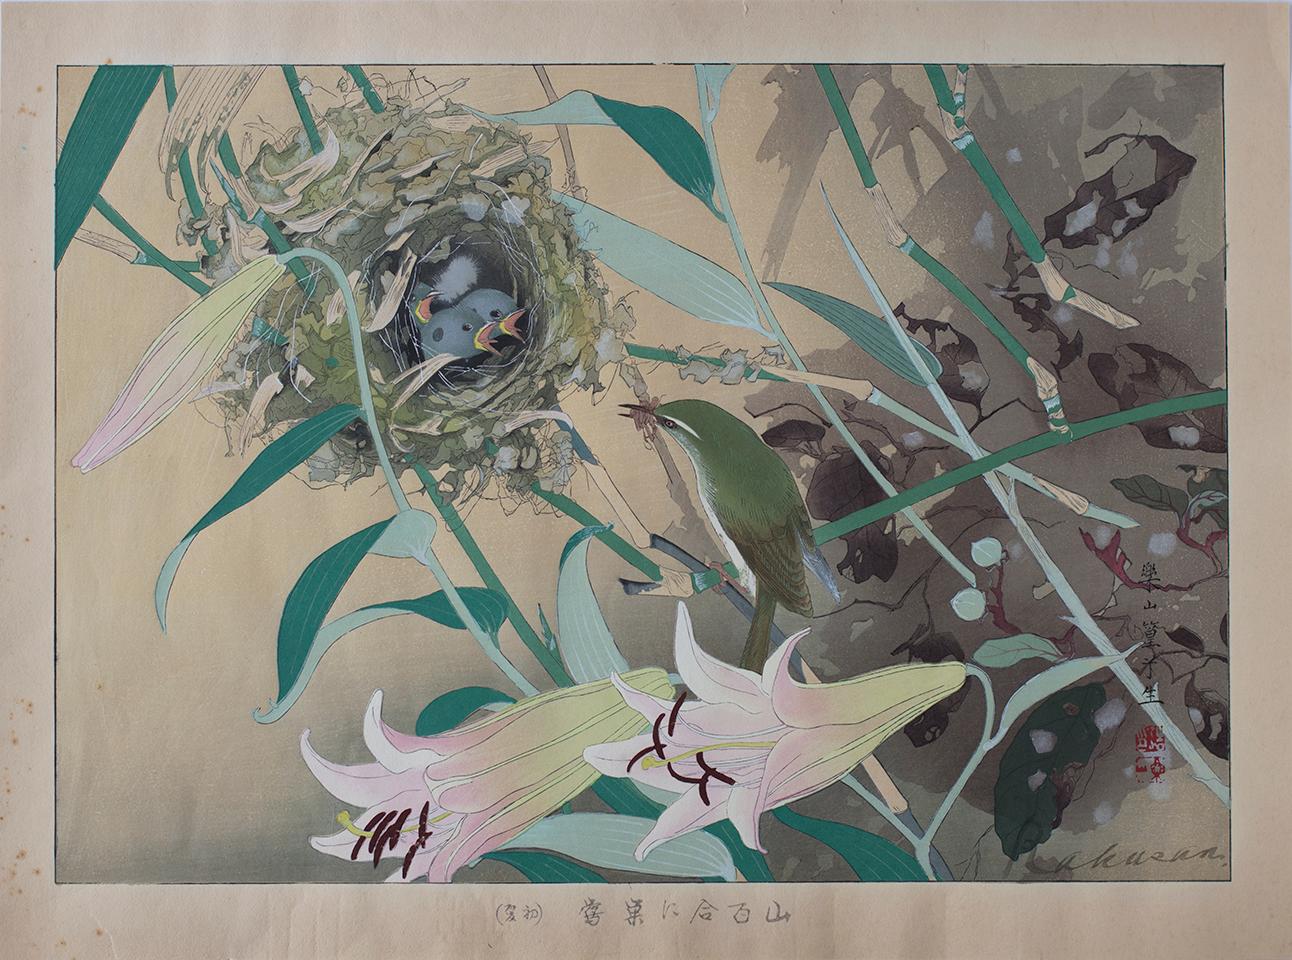 Bamboo Lily and Japanese Nightingale Nest - Print by Tsuchiya Rakusan